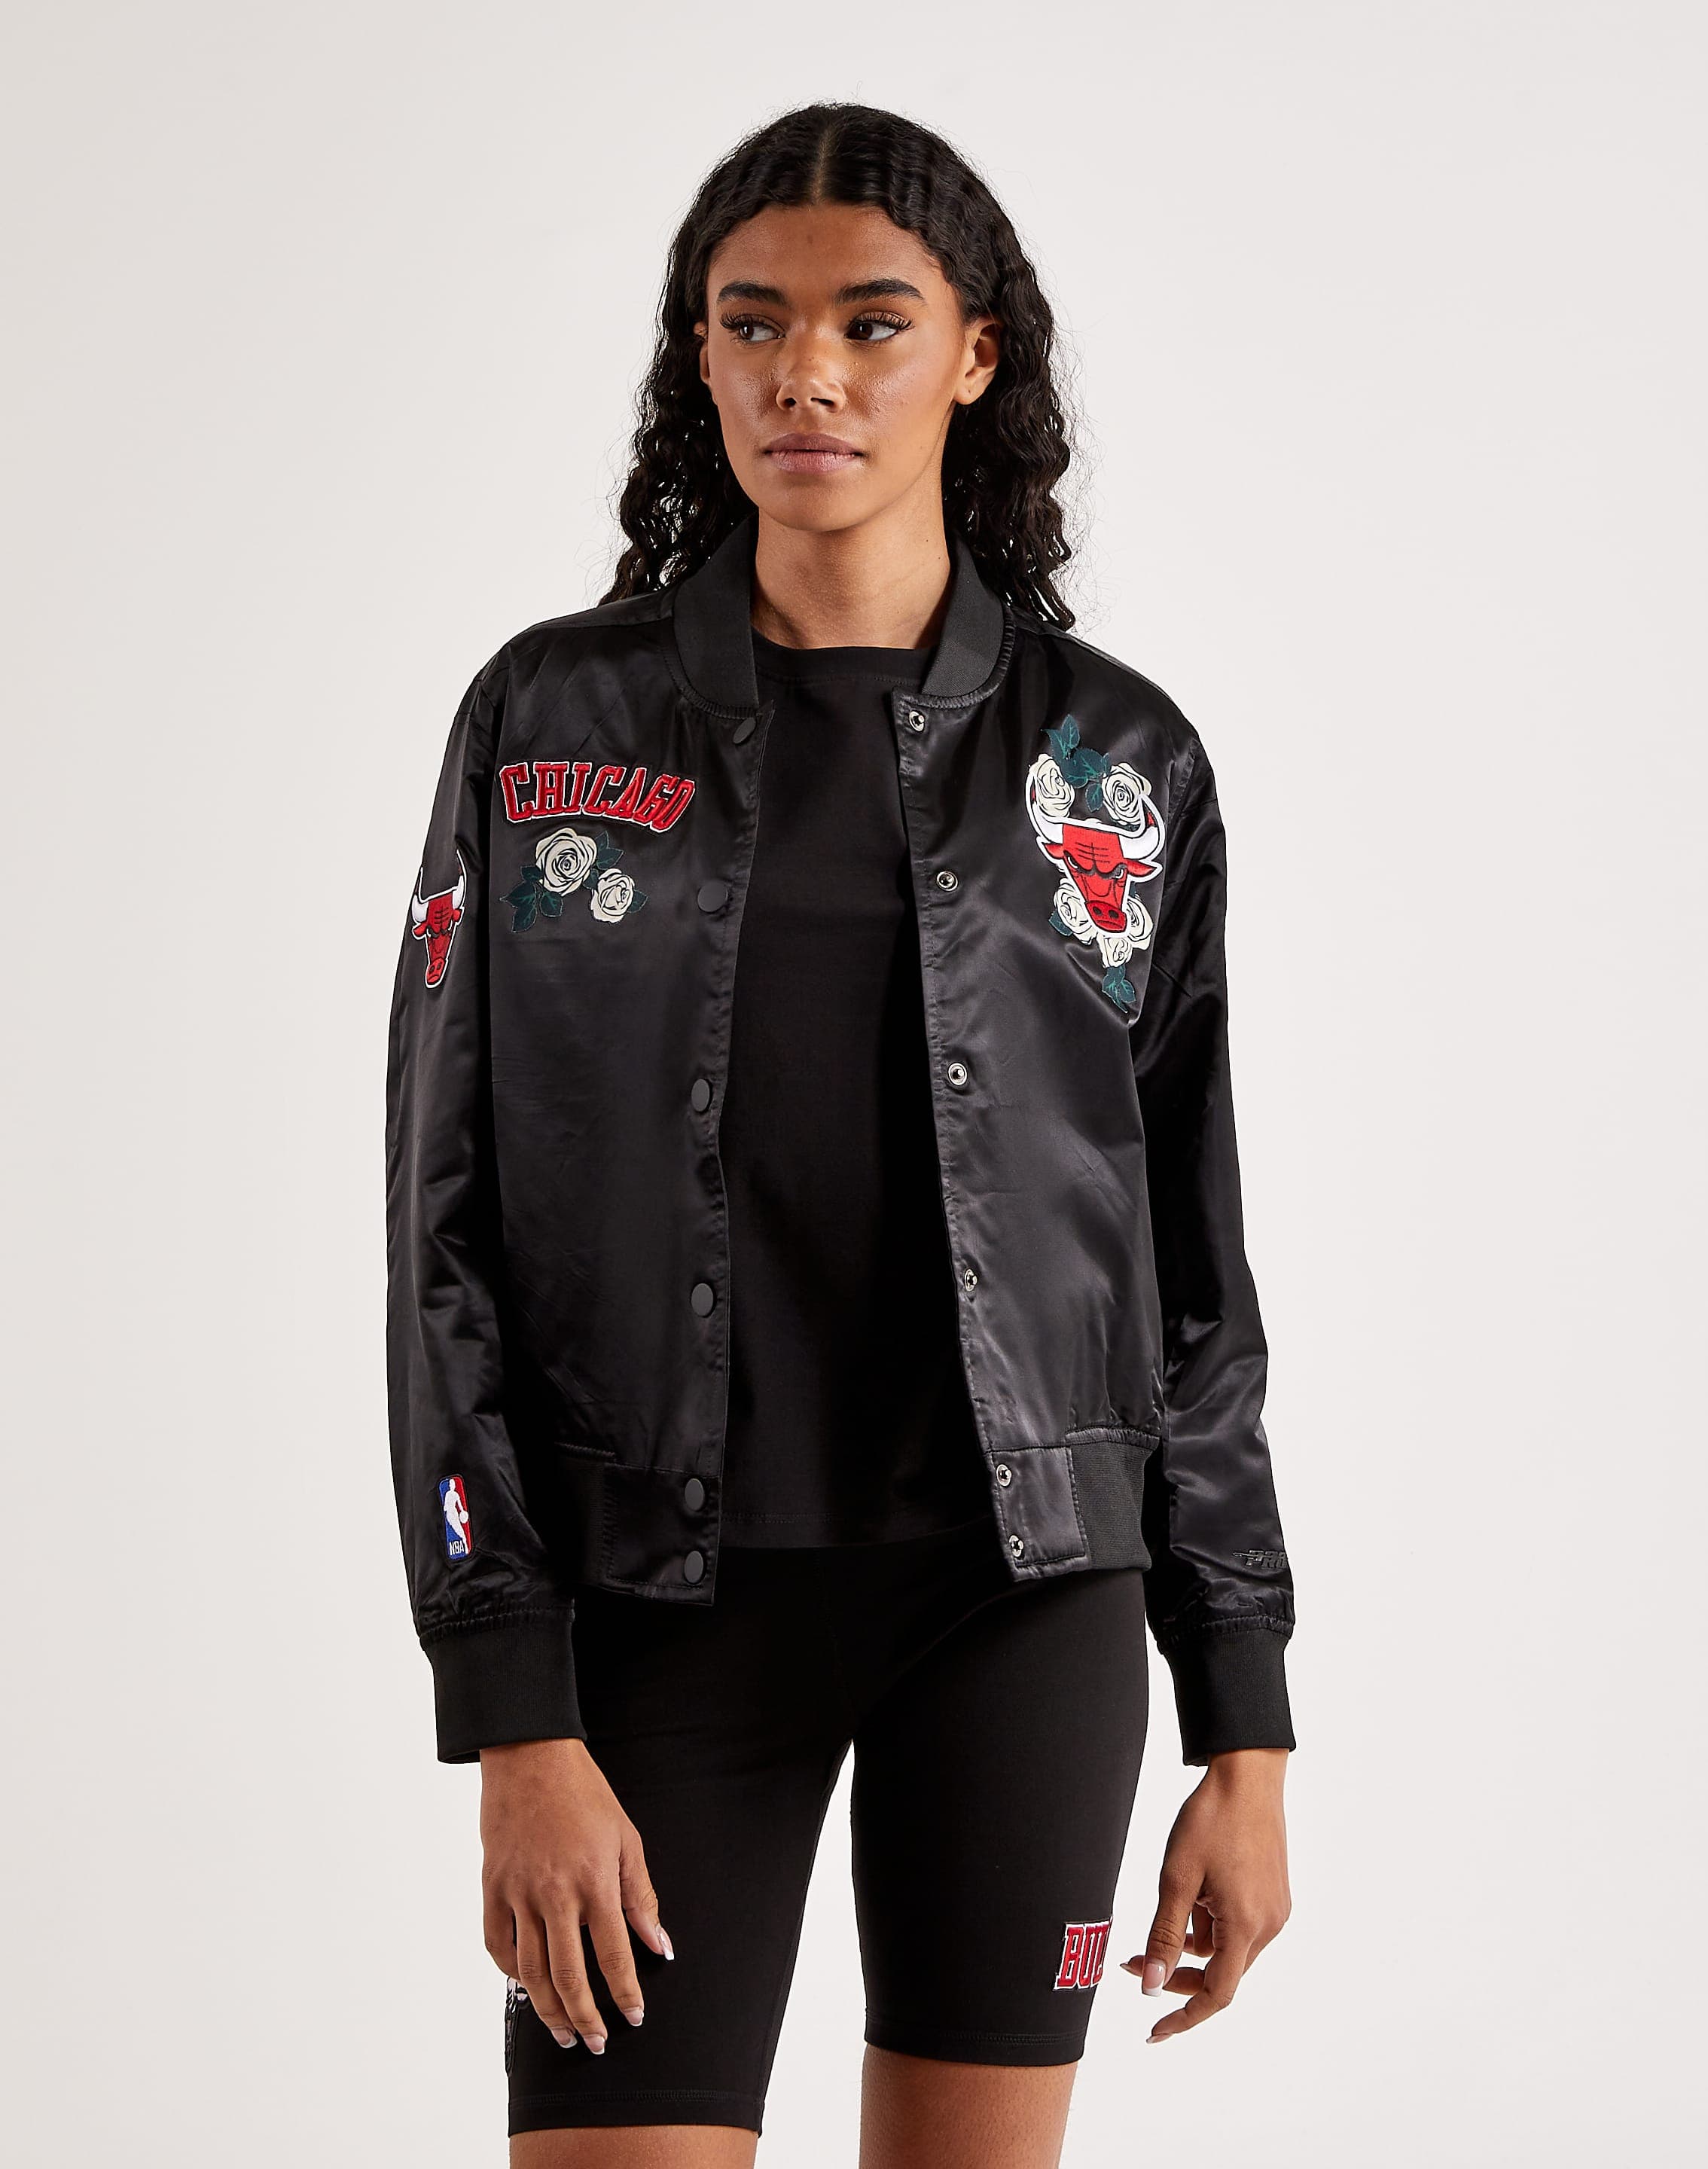 Pro Standard Women's Chicago Bulls Denim Varsity Bomber Jacket